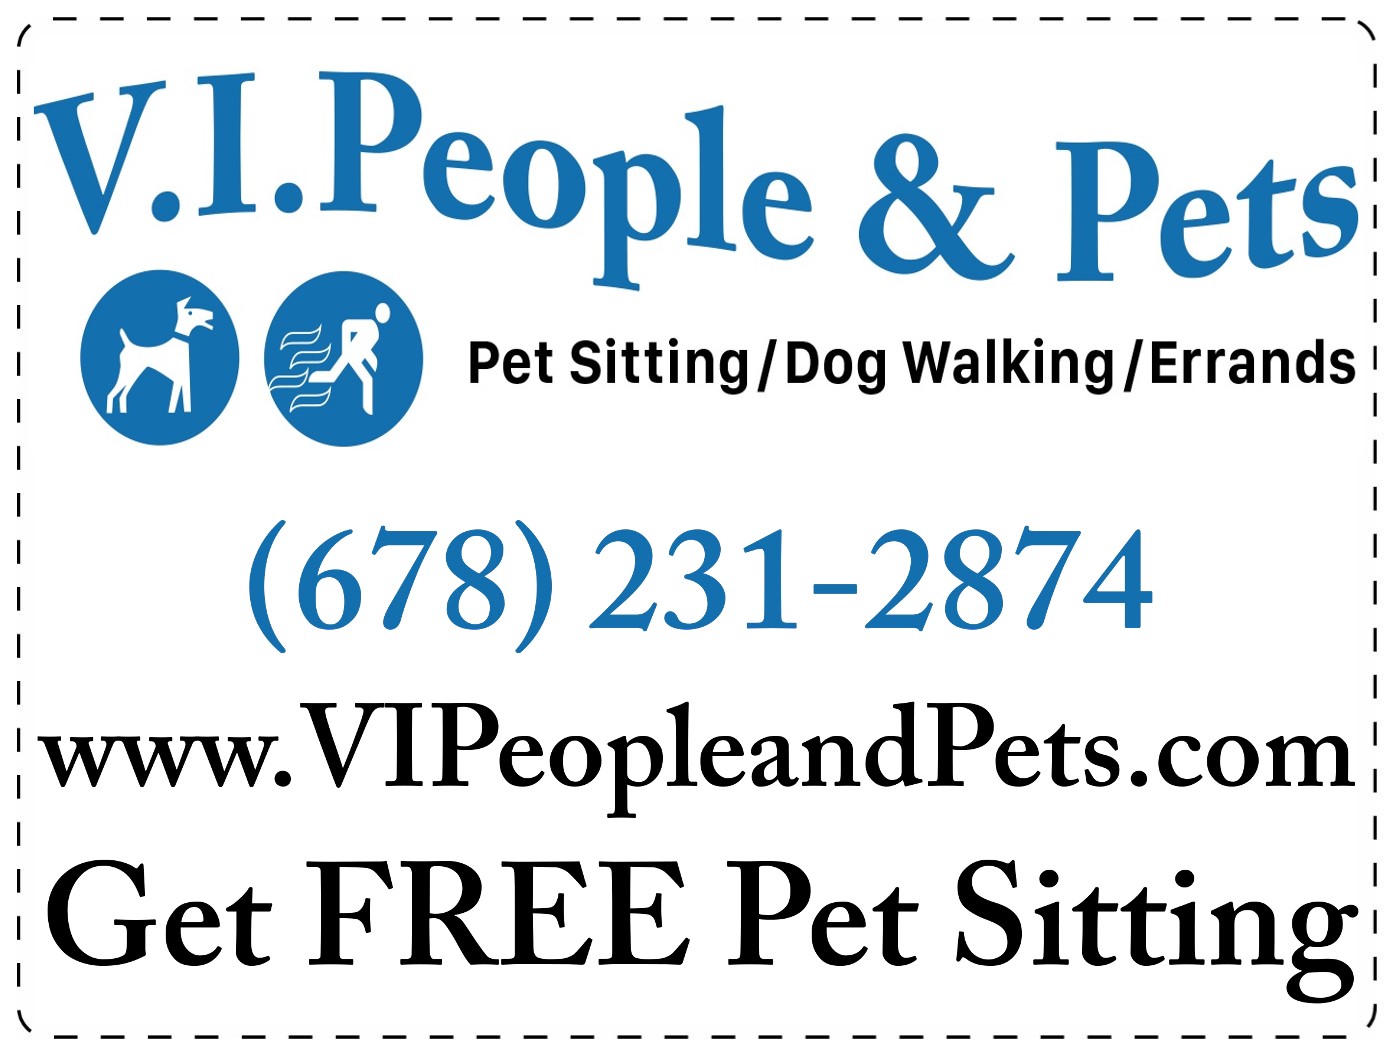 V.I.People & Pets